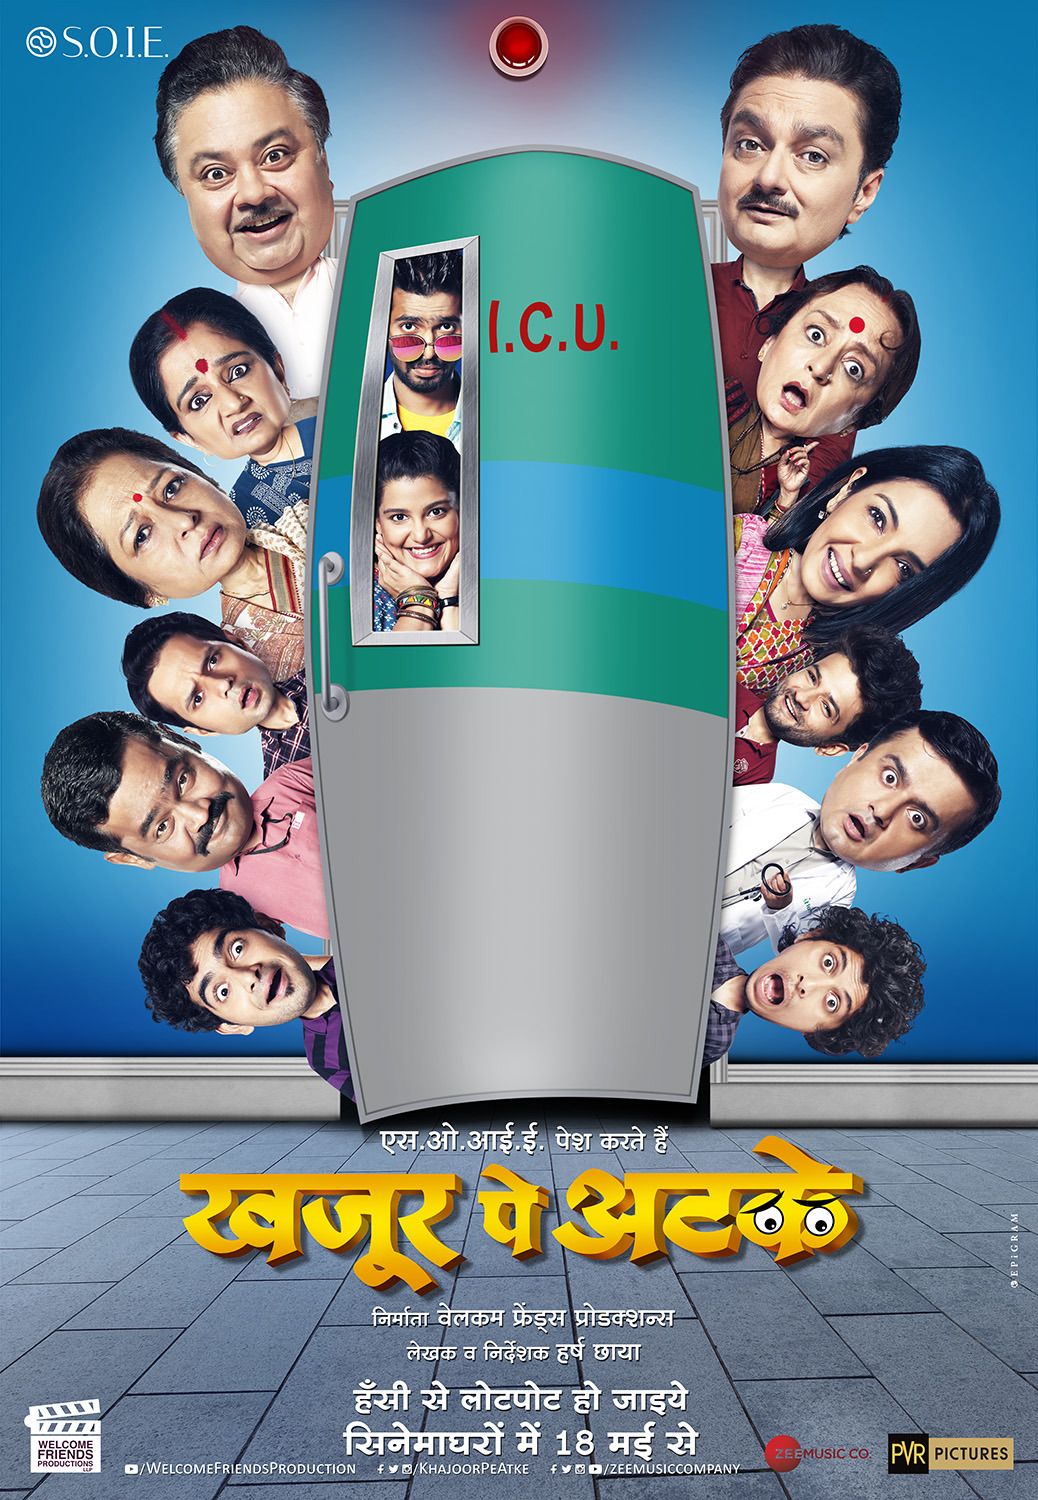 Extra Large Movie Poster Image for Khajoor Pe Atke (#2 of 3)